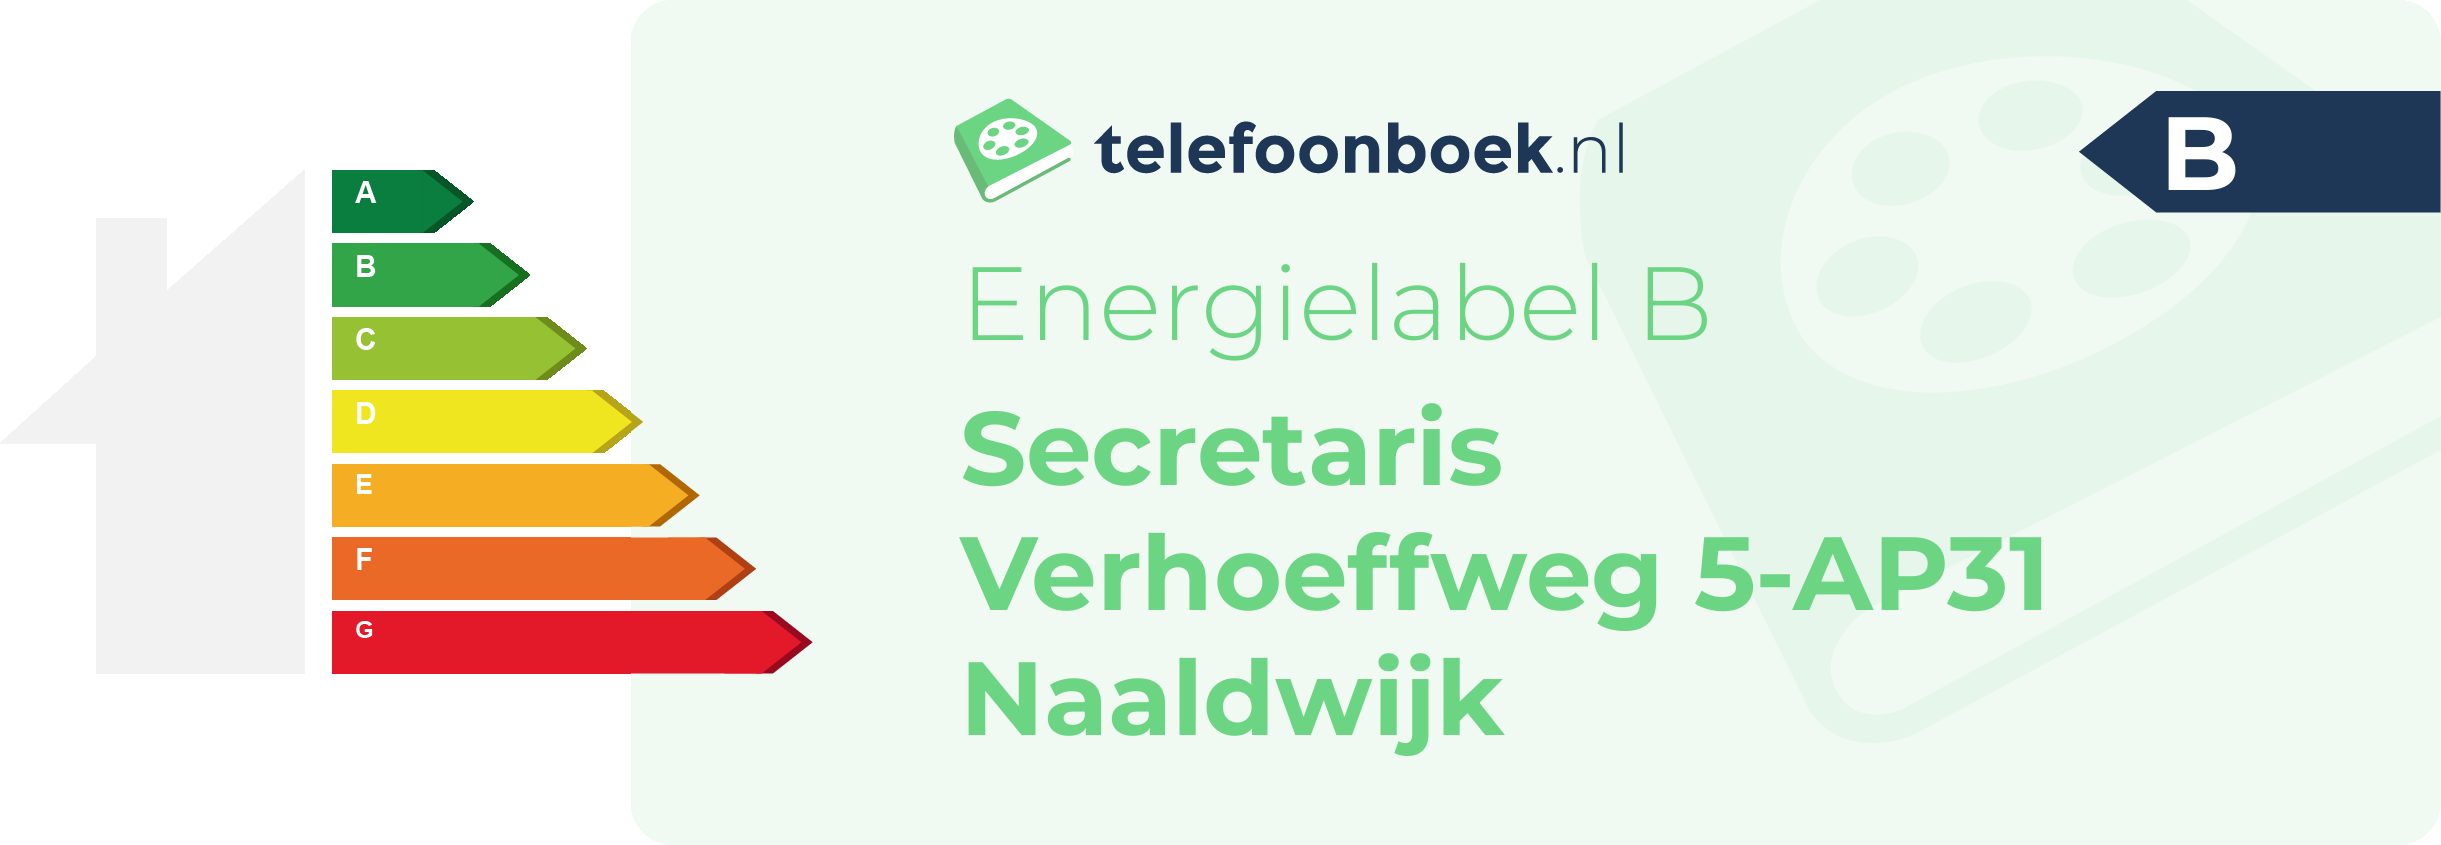 Energielabel Secretaris Verhoeffweg 5-AP31 Naaldwijk